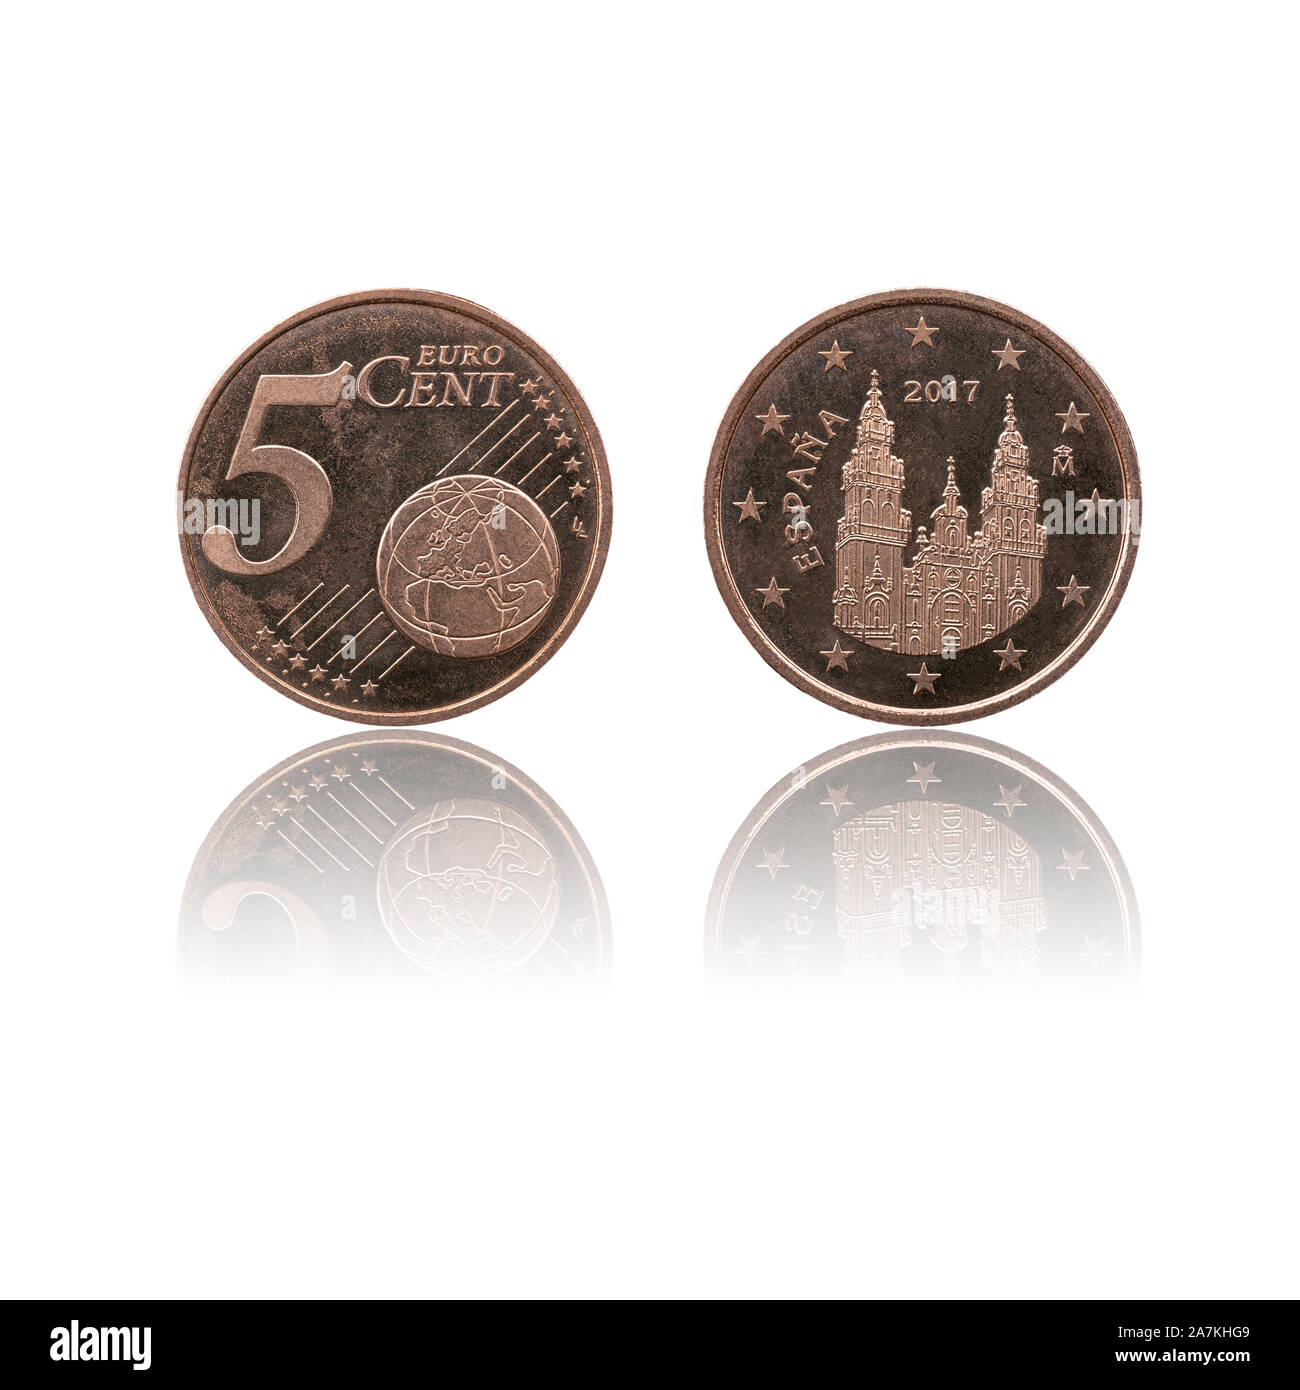 Euro coin both sides Banque de photographies et d'images à haute résolution  - Alamy